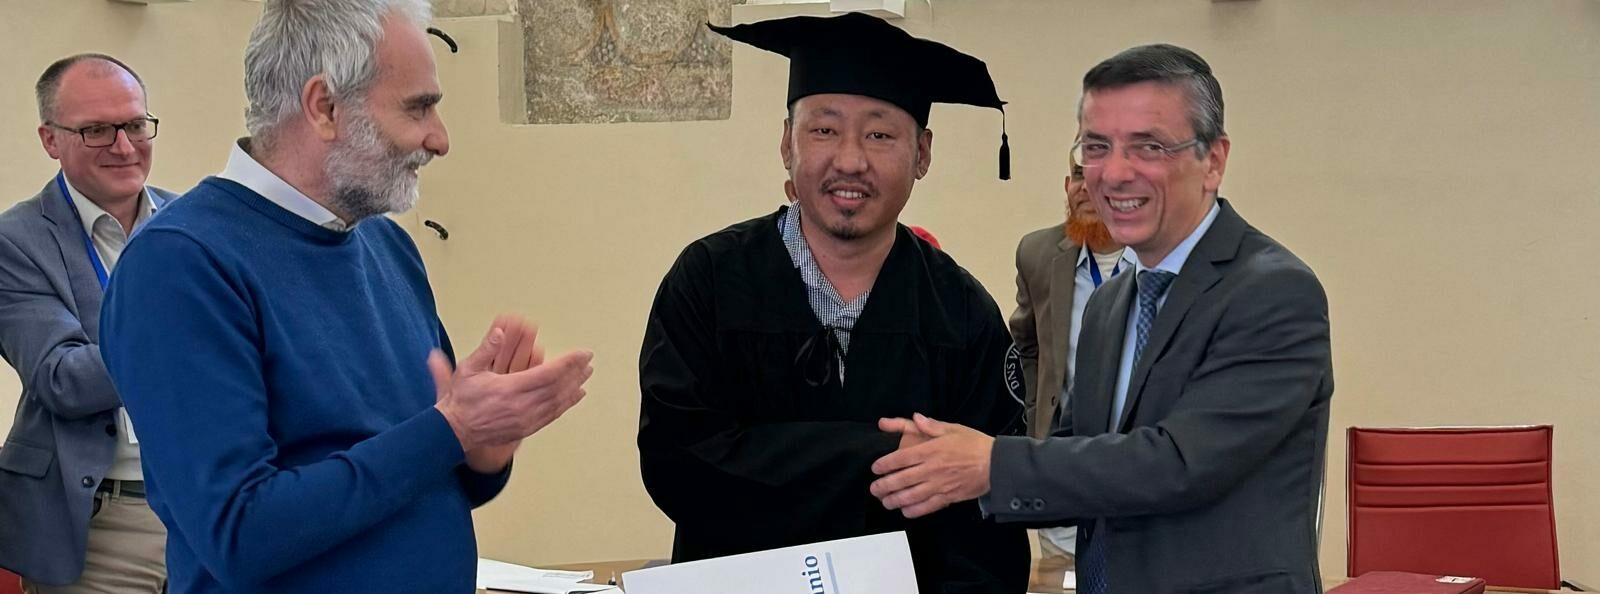 Unisannio, speciale graduation day per il professore Karma Tempa dal Bhutan